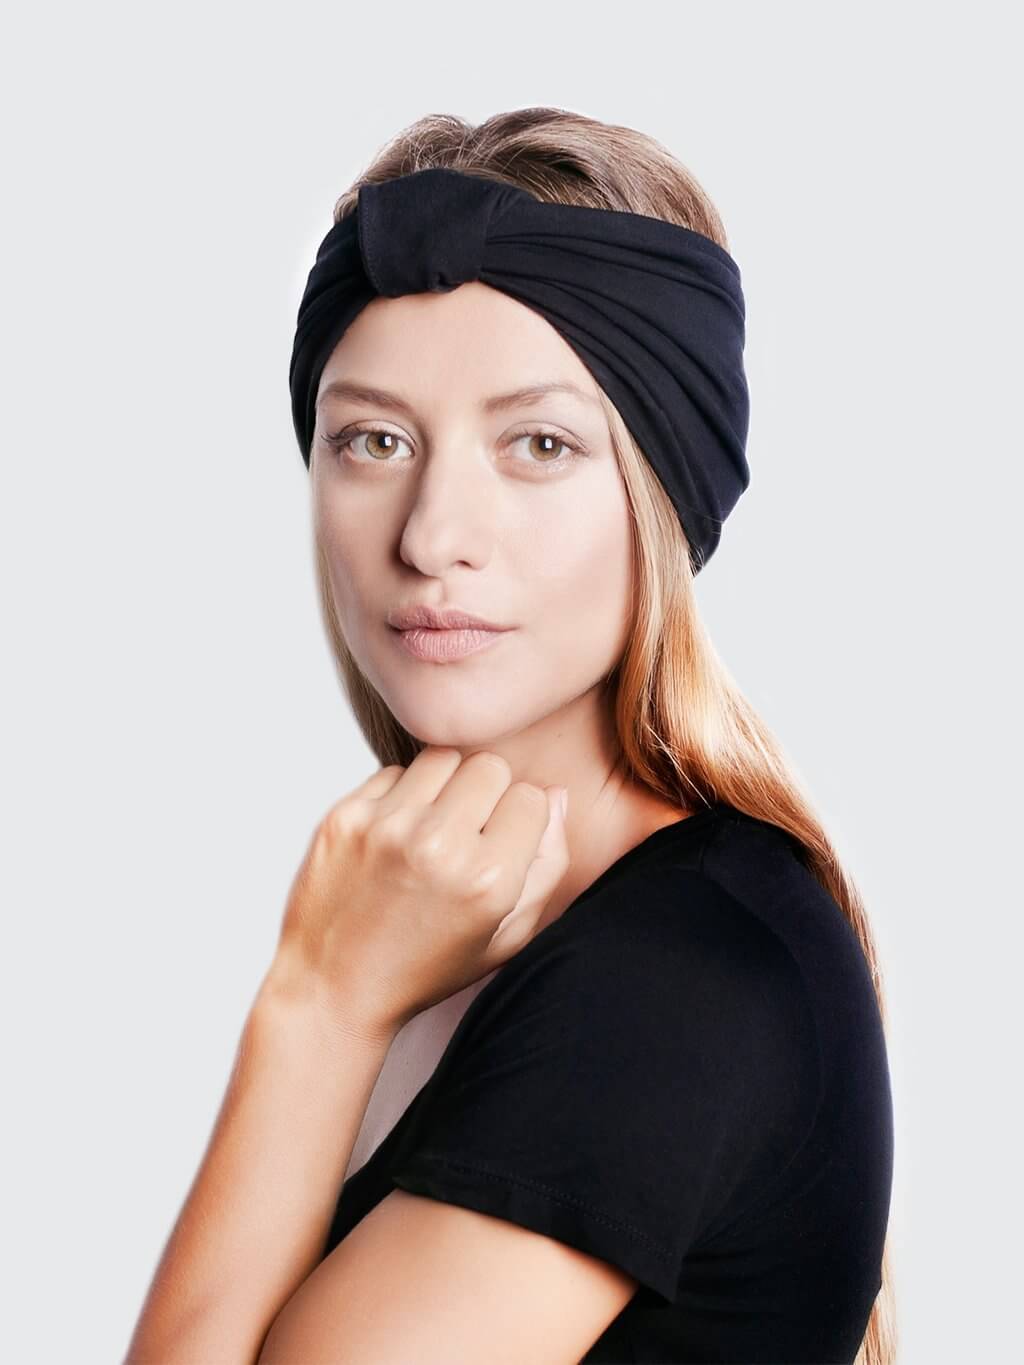 BLOM Original headband for women in Black. Multi style, wear 14+ ways